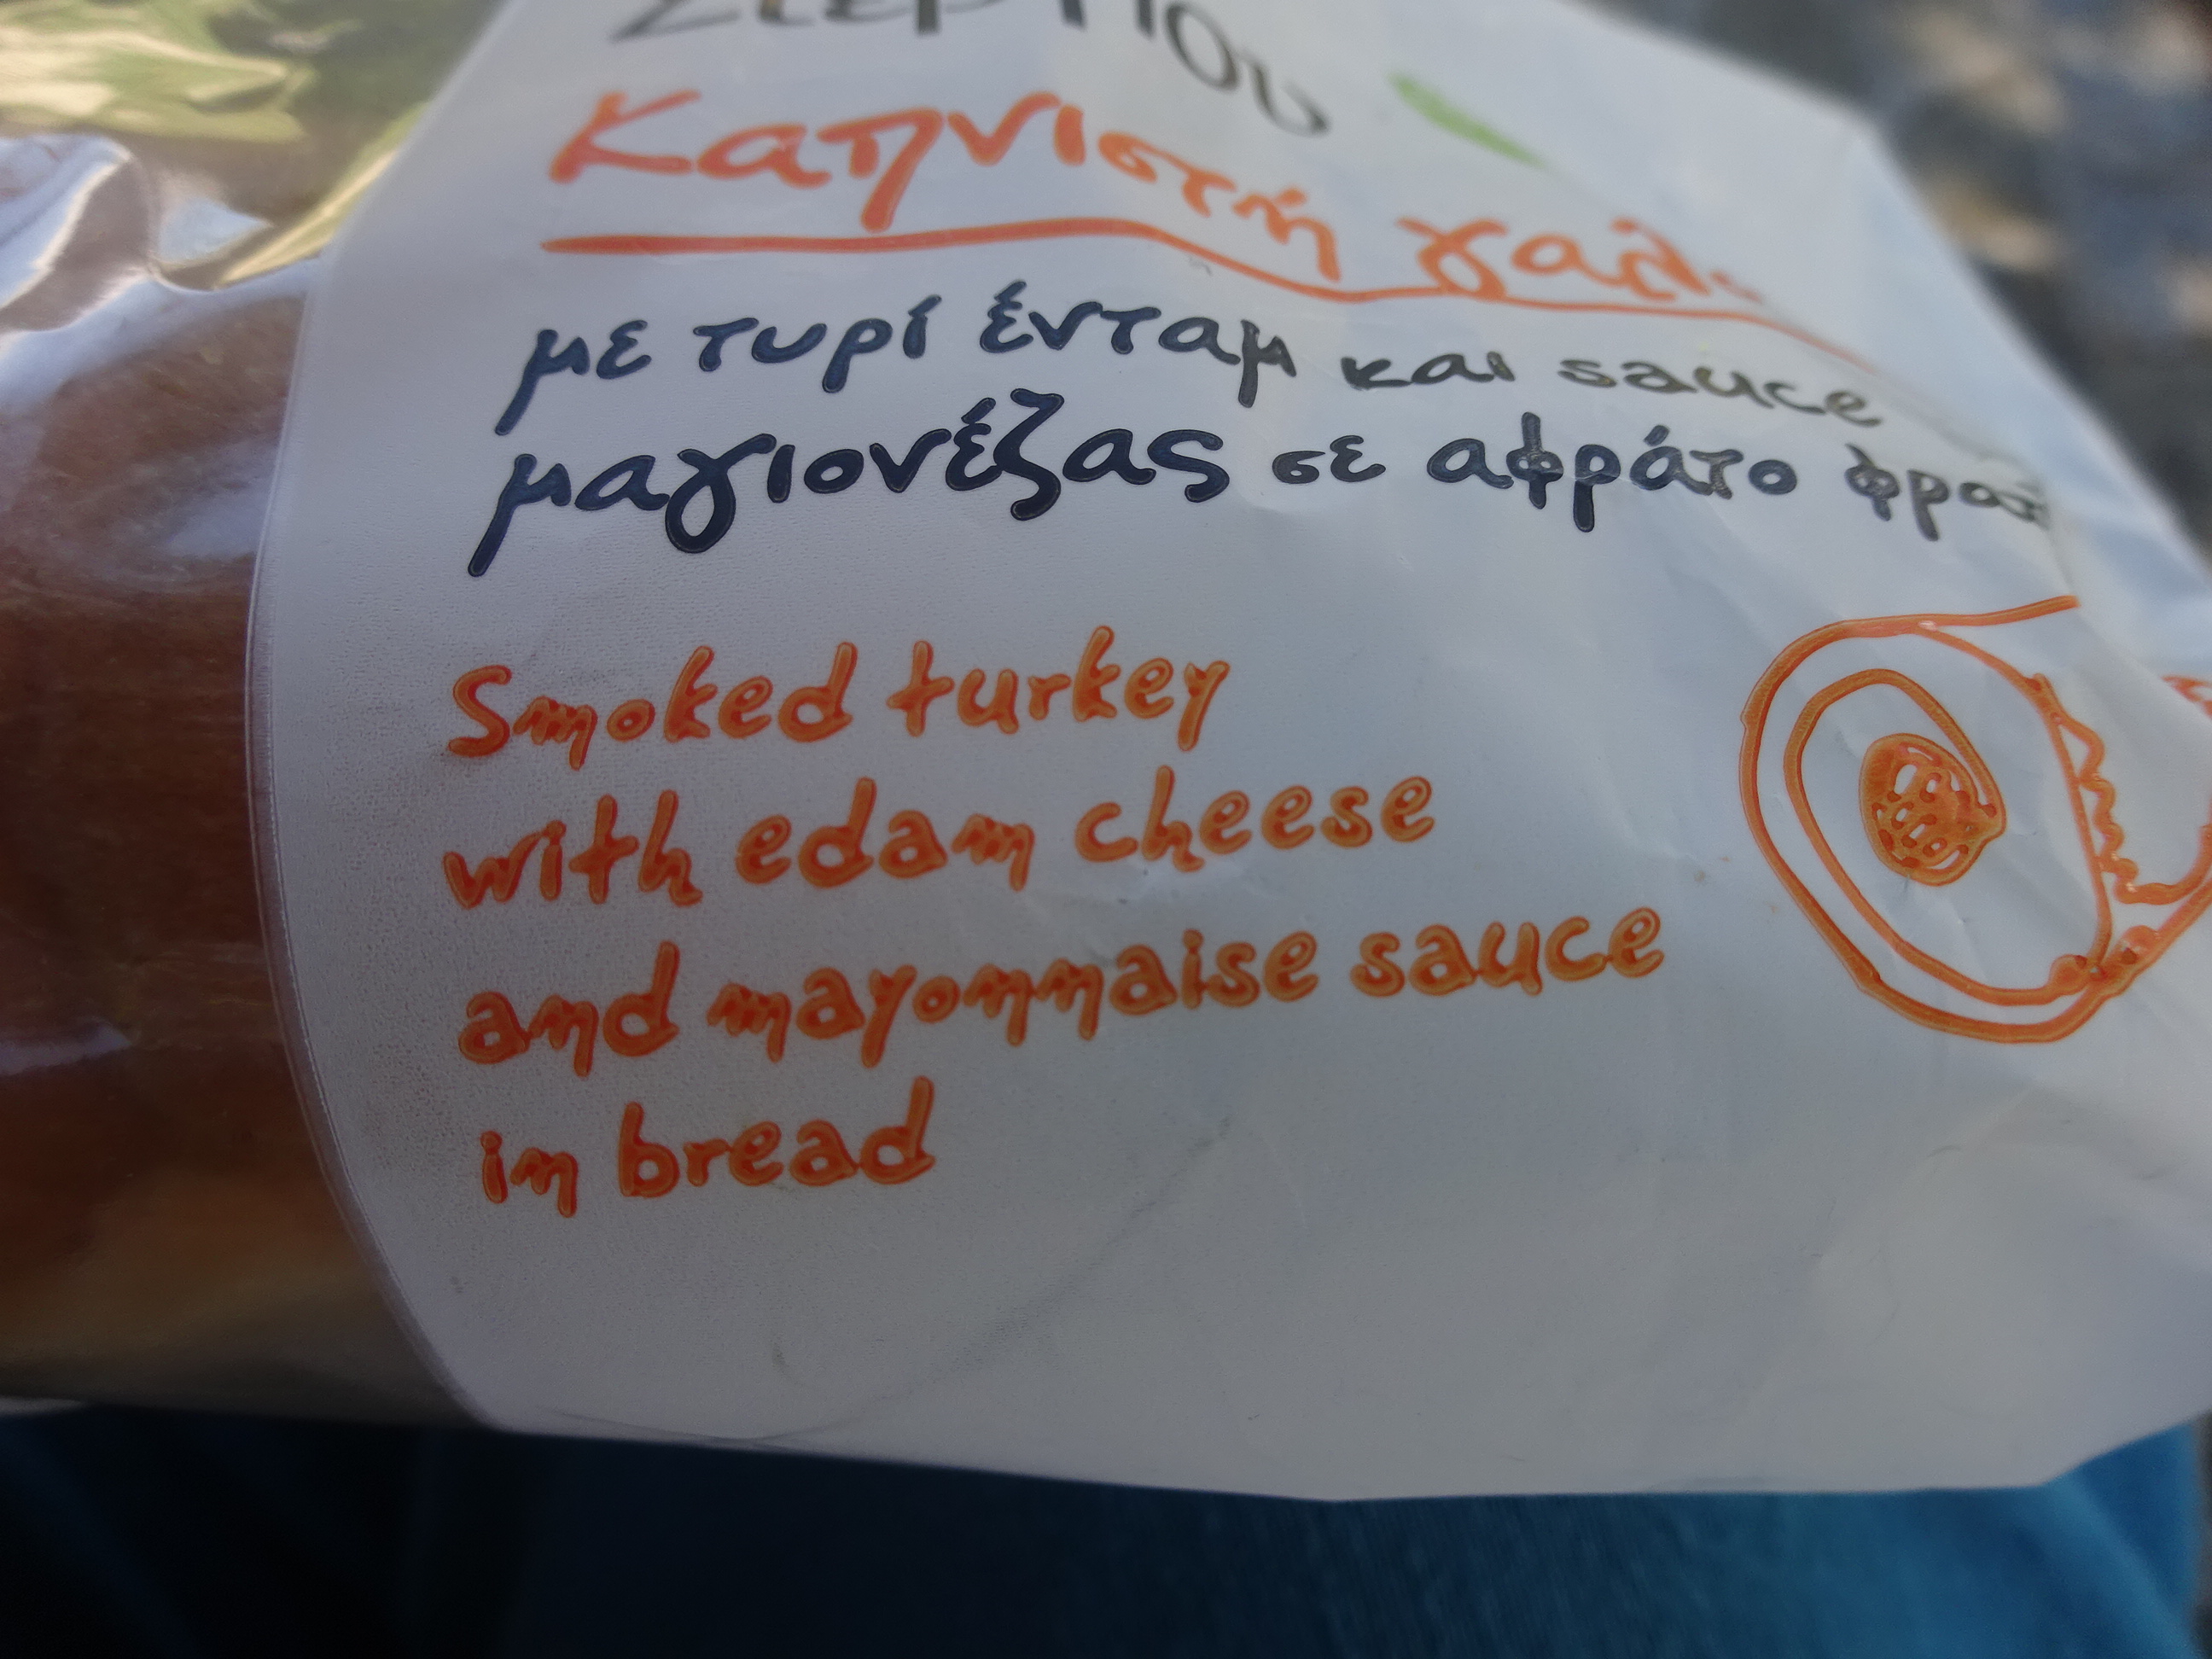 アルバニアのバスステーションで買えるおすすめサンドイッチのエダムチーズ味